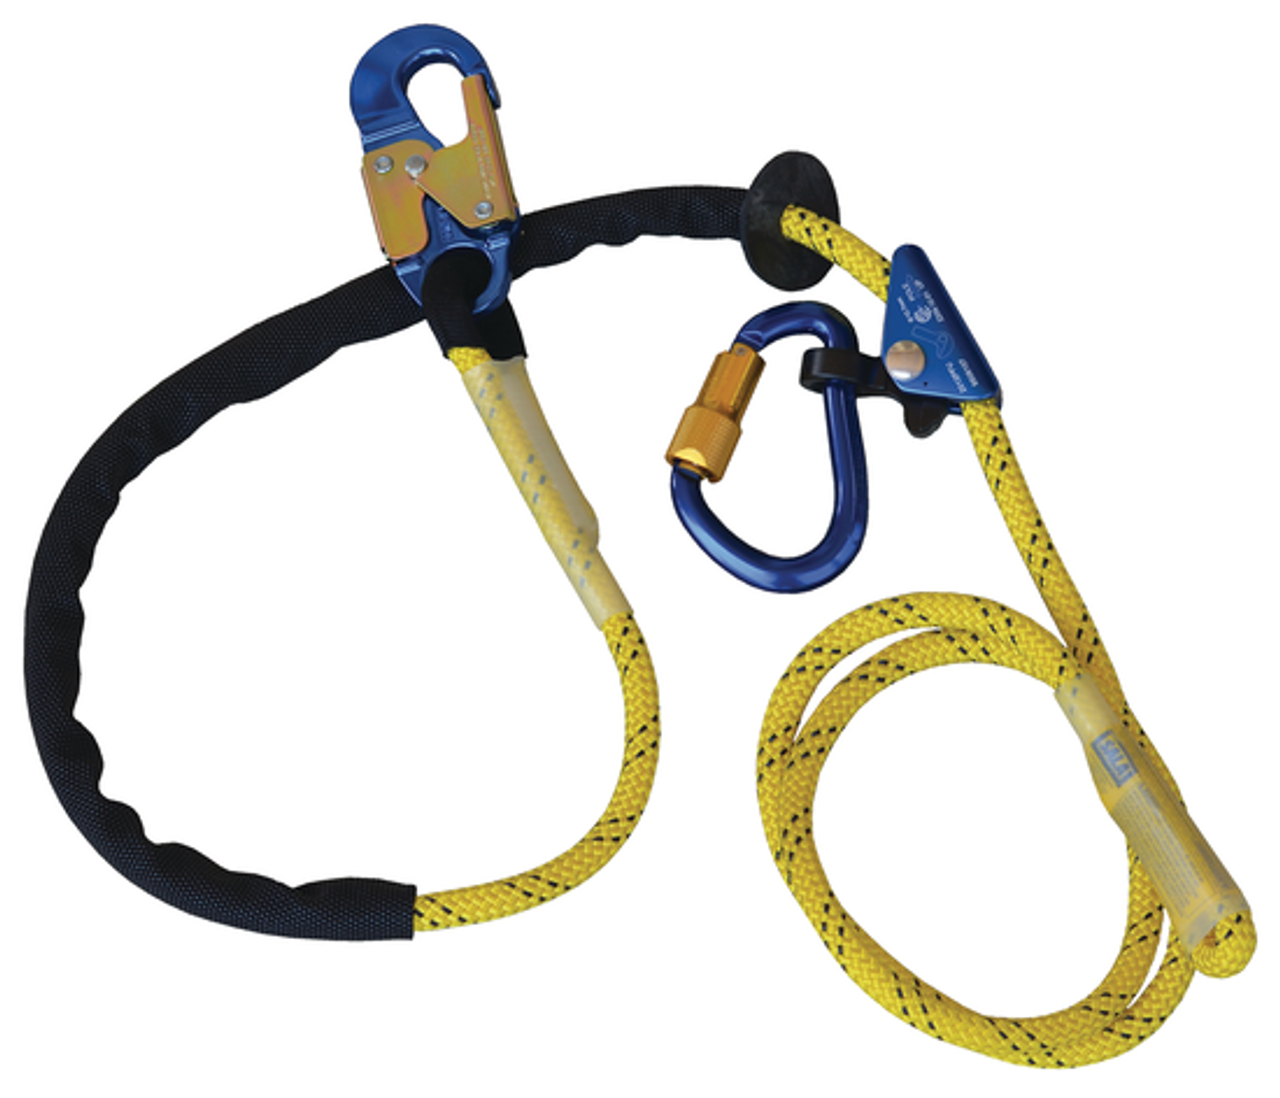 3M DBI-SALA Lineman Pole Climbing Kit Size D24 - 1050028 - Jendco